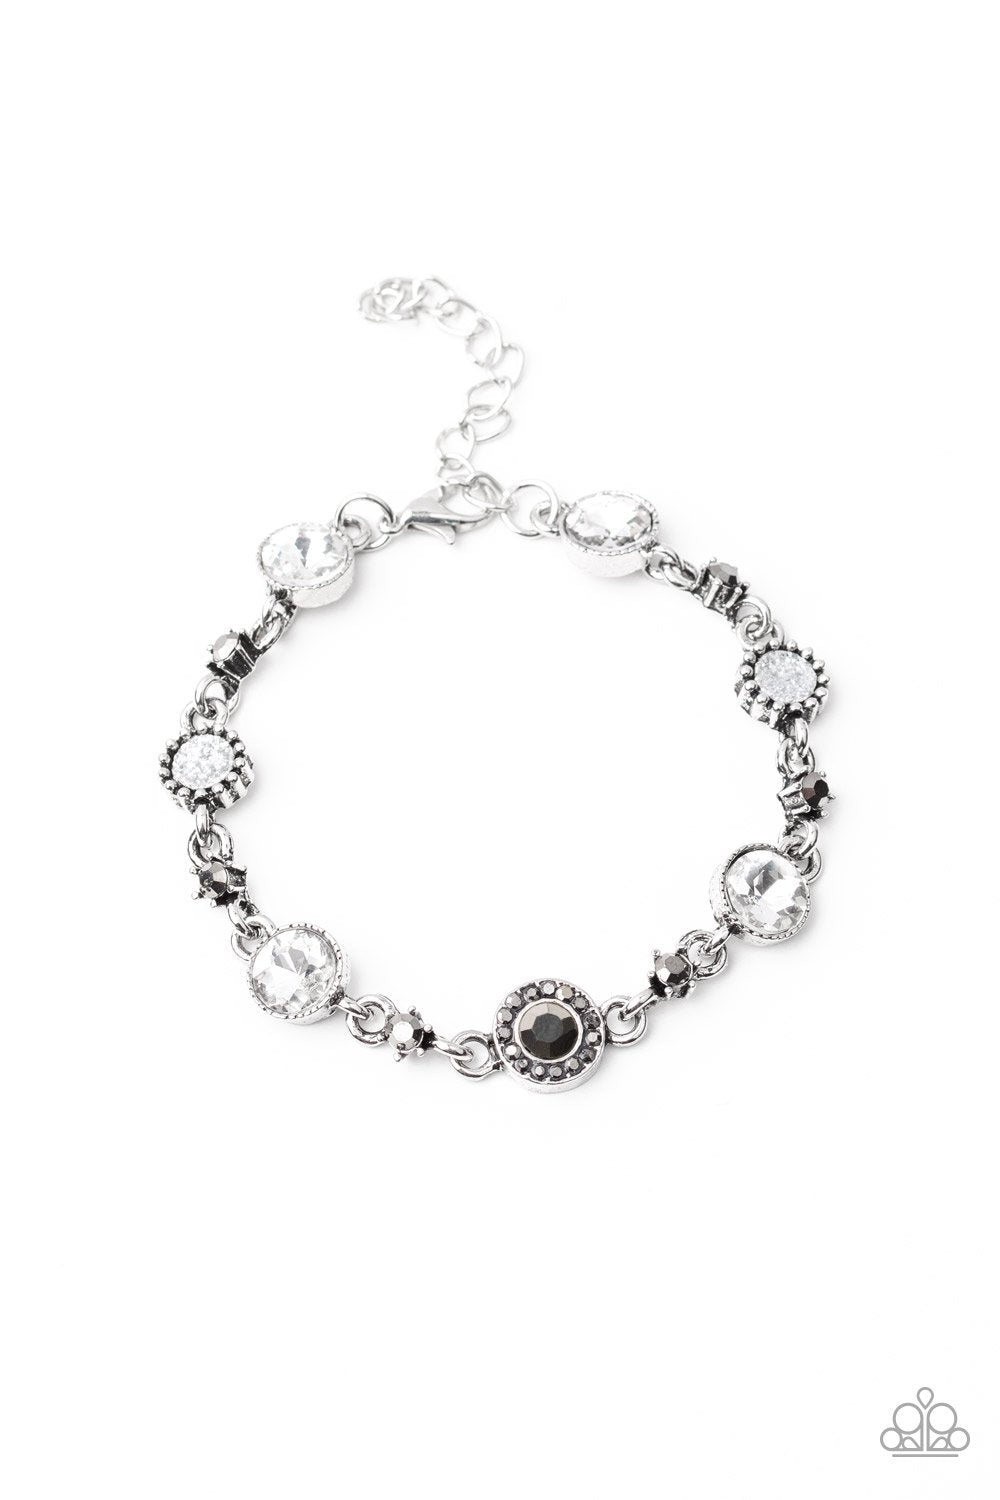 Stargazing Sparkle White Rhinestone Bracelet - Paparazzi Accessories-CarasShop.com - $5 Jewelry by Cara Jewels